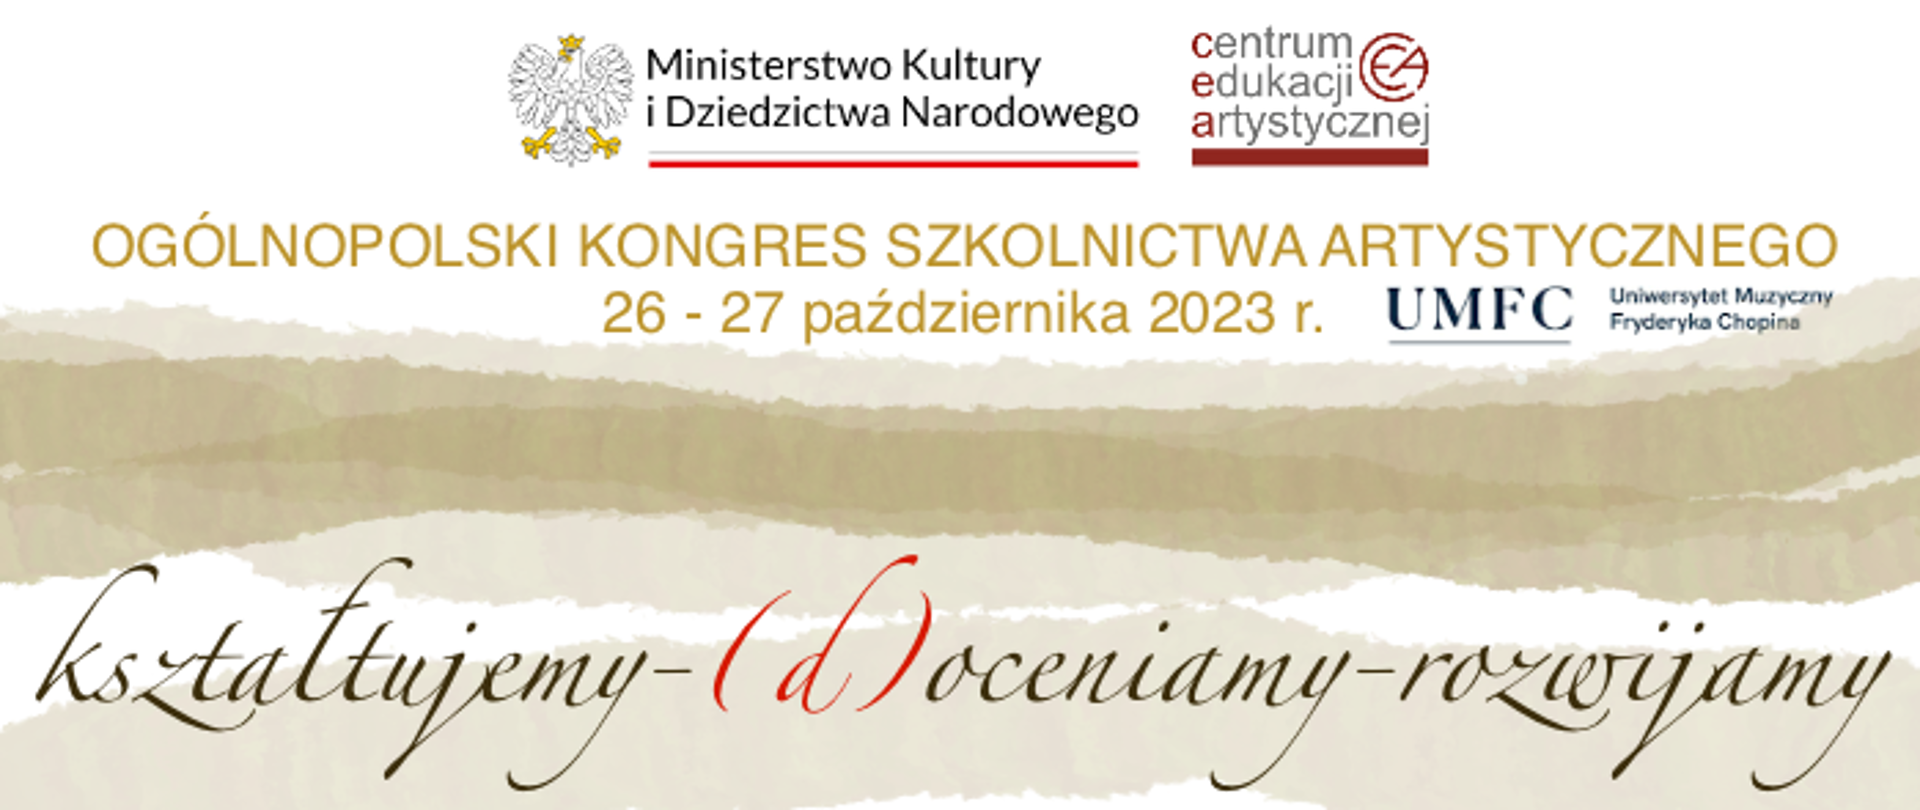 Baner Ogólnopolskiego Kongresu Szkolnictwa Artystycznego z logotypami CEA, MKiDN i UMFC